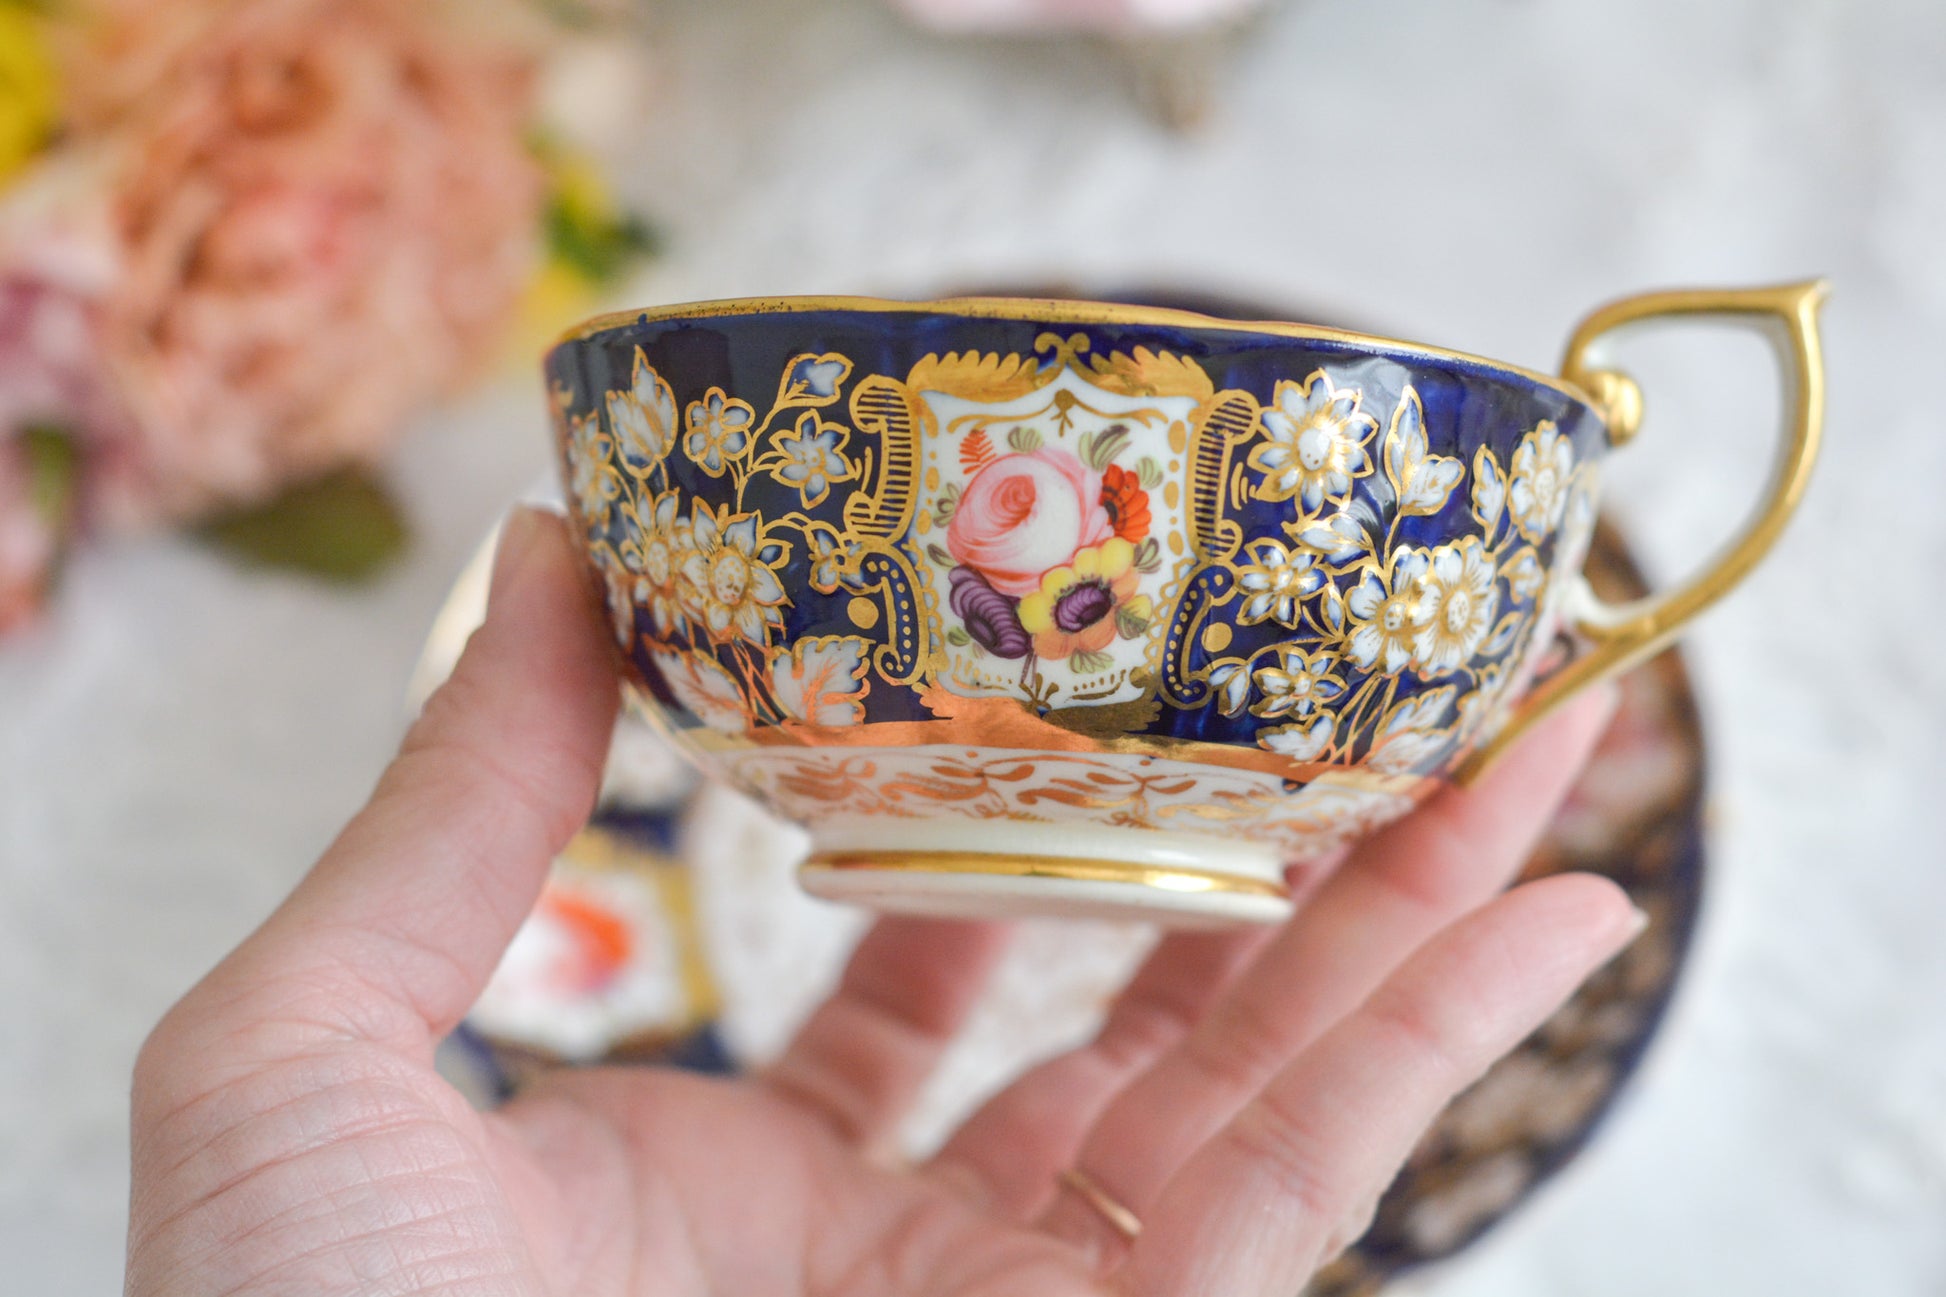 コールポートの1820年代に作られたとっても貴重なお品。コバルトブルー地に白抜きの立体的なお花模様、エナメル画のブーケは繊細なタッチで大変美しく描かれています。まさしく貴族のティータイムのためのカップ。当時の持ち主の大切な財産だったことでしょう。そしてこちらは実際に使われていたと思われます。金彩が剥がれていたり、ソーサーはヒビがあるけれど、よく２００年間受け継がれてここに来てくれたと思います。